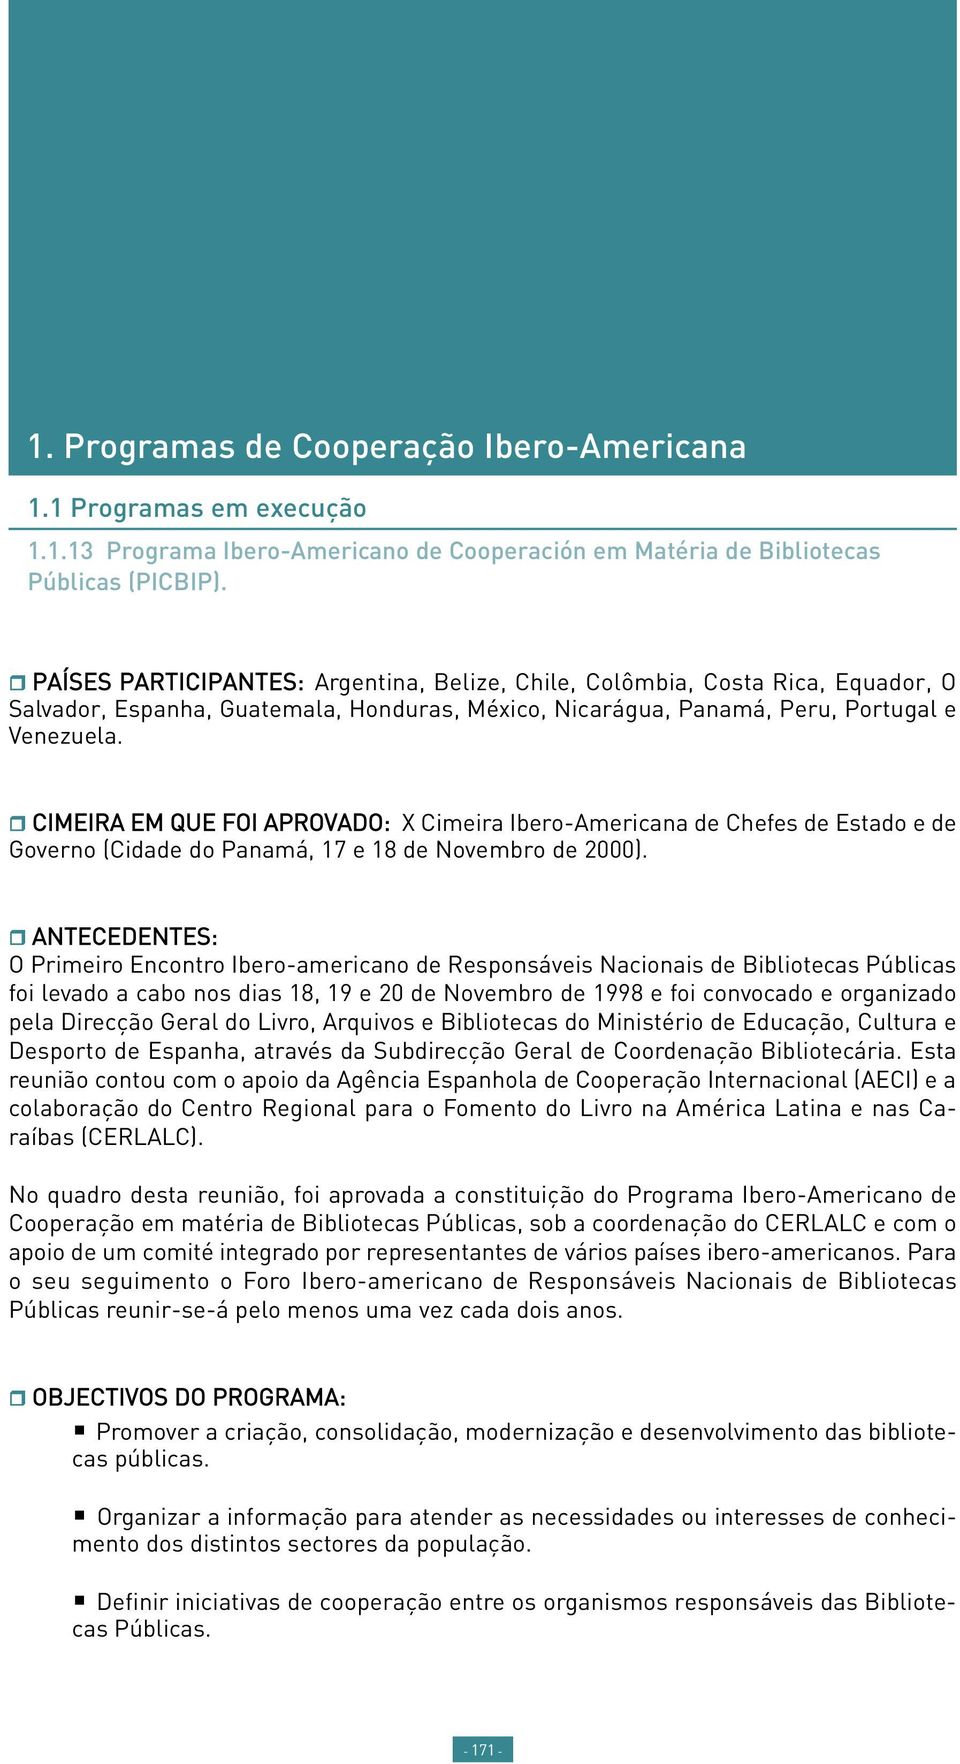 CIMEIRA EM QUE FOI APROVADO: X Cimeira Ibero-Americana de Chefes de Estado e de Governo (Cidade do Panamá, 17 e 18 de Novembro de 2000).